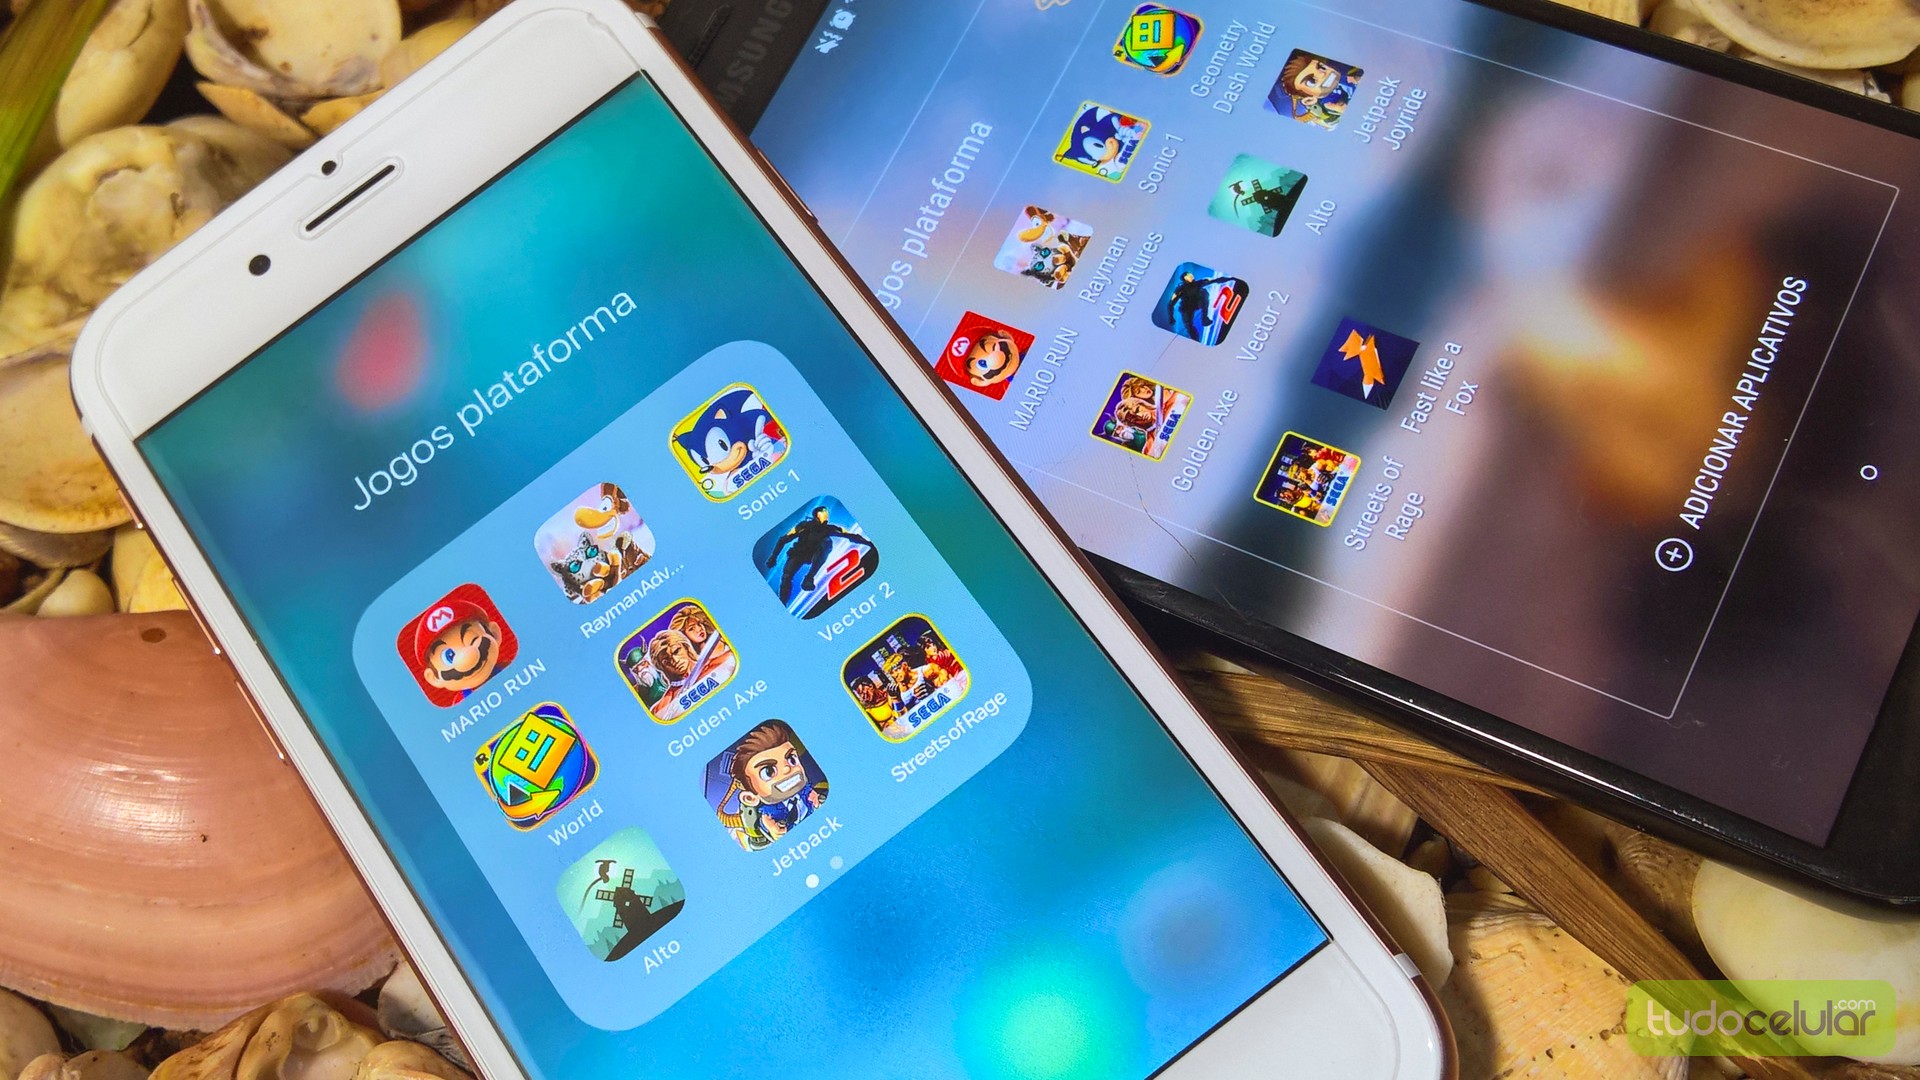 Passarelas do Rock: 10 Aplicativos de Jogos para Android gratuitos